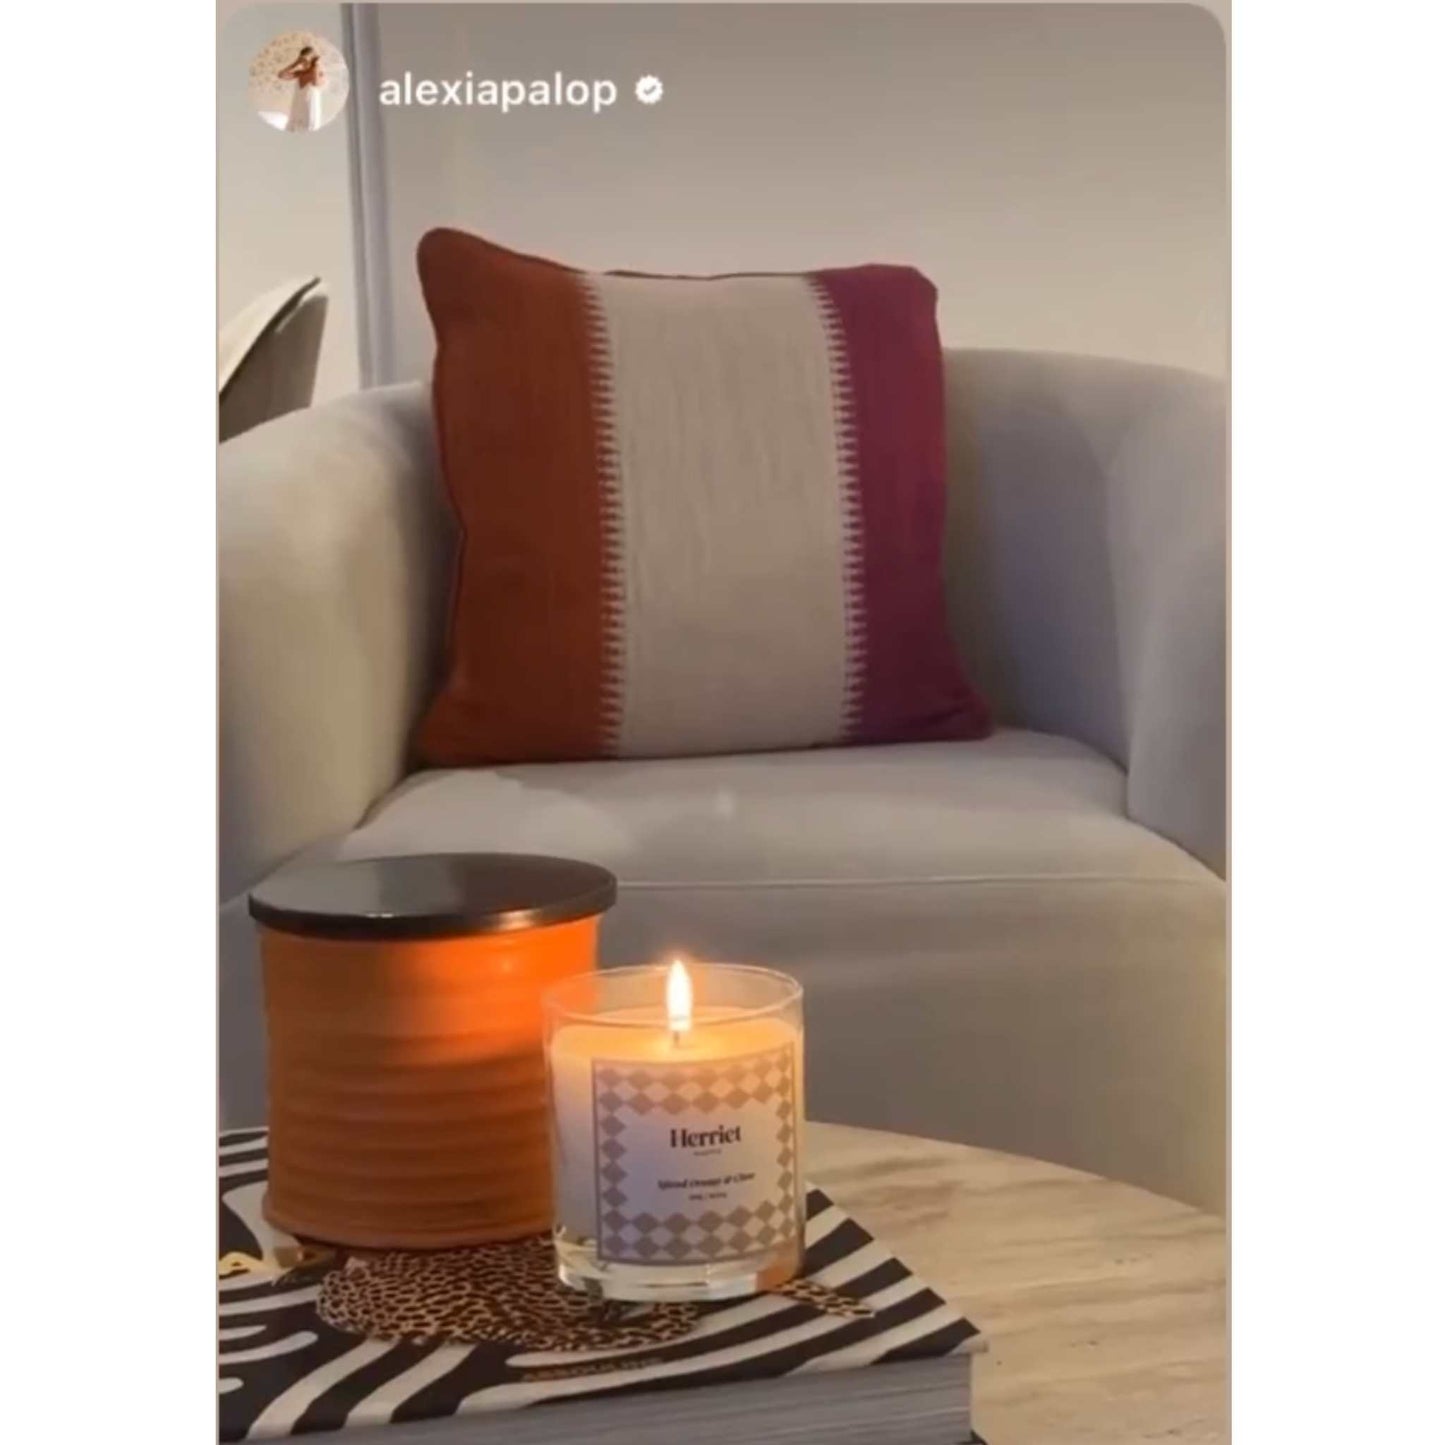 en el salón de Alexia Palop encontramos la vela de Loewe en naranja, y la vela de Herriet encendida que huele a naranja y clavo